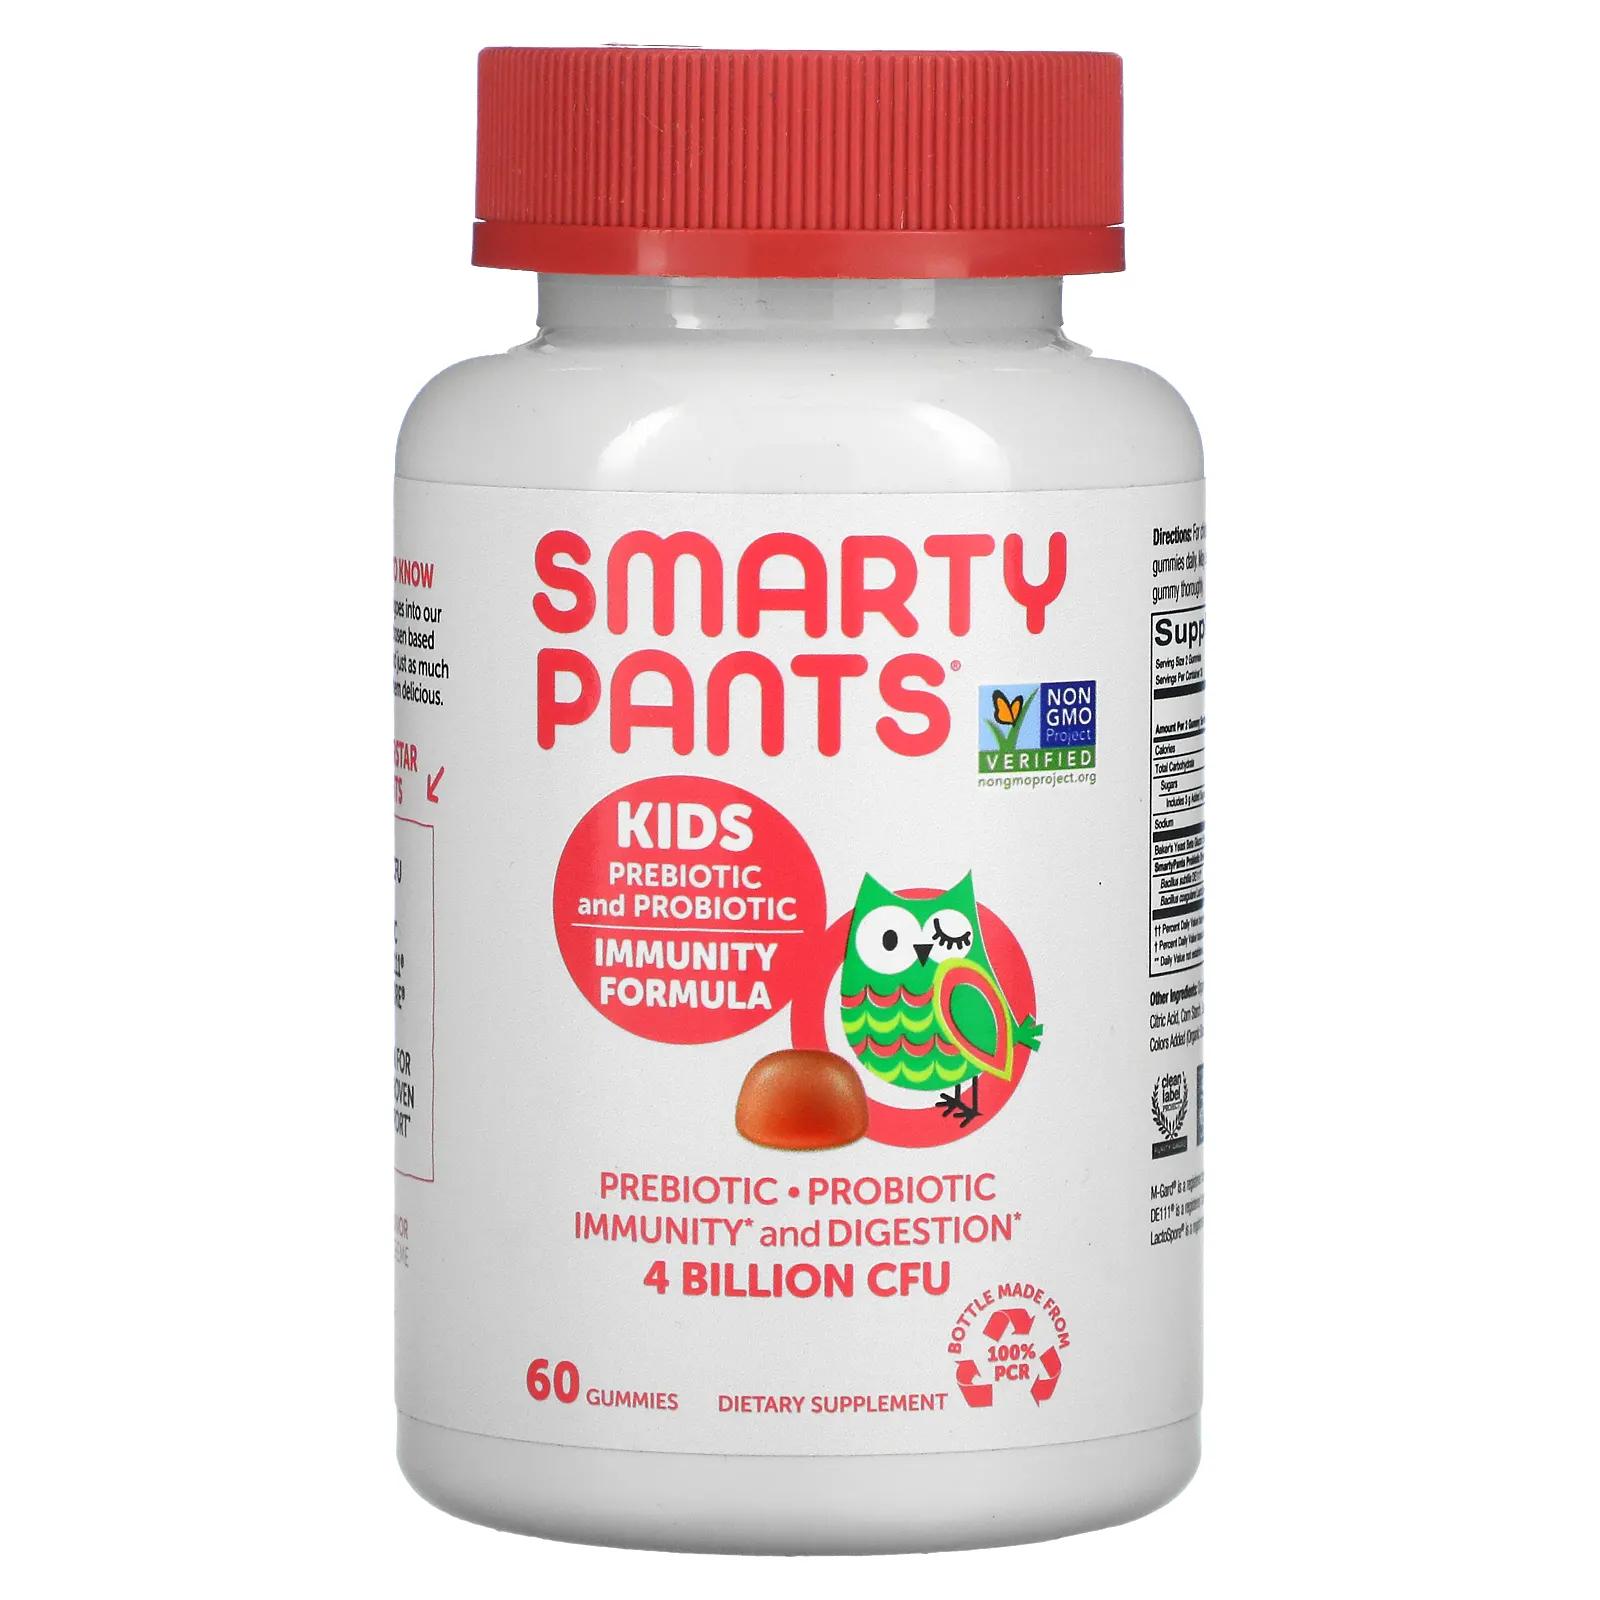 SmartyPants Kids Probiotic Complete клубничный крем 4 миллиарда КОЕ 60 жевательных конфет формула для иммунитета smartypants kids с пребиотиками и пробиотиками 60 жевательных конфет